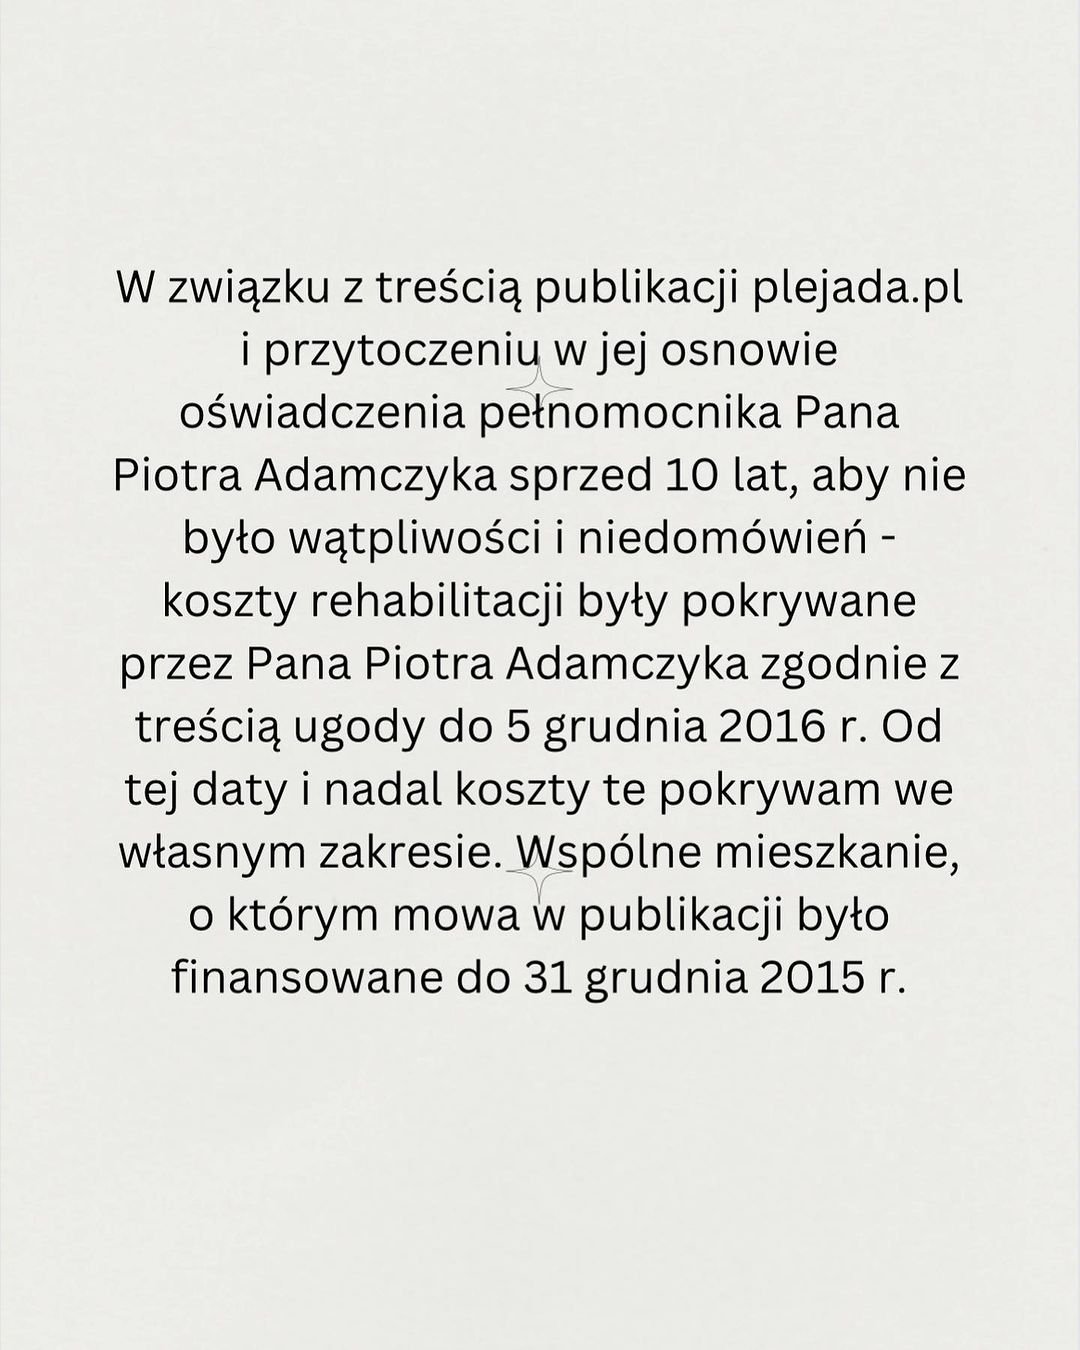 Weronika Rosati, oświadczenie w sprawie Piotra Adamczyka